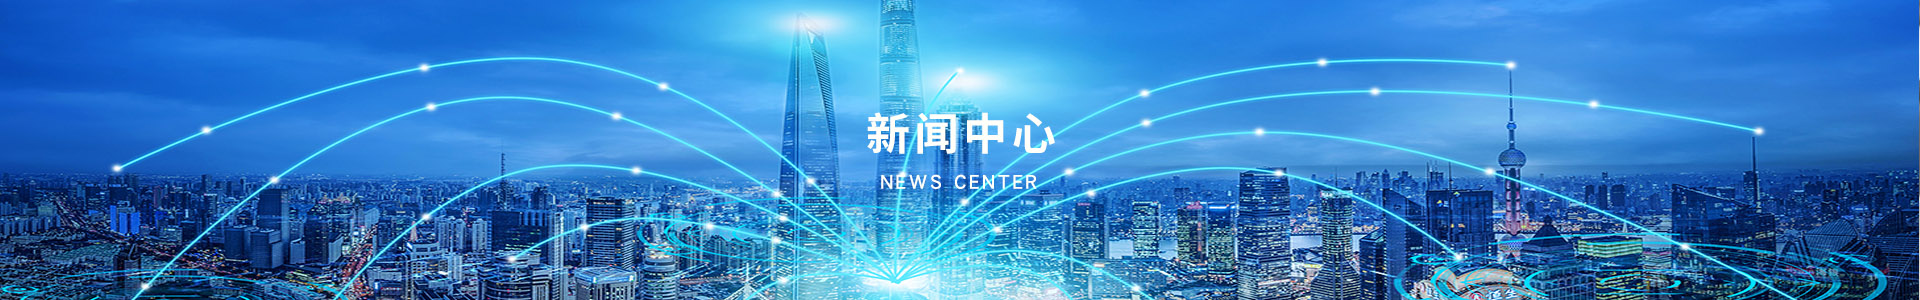 新聞資訊列表-深圳市奧德機械有限公司官網